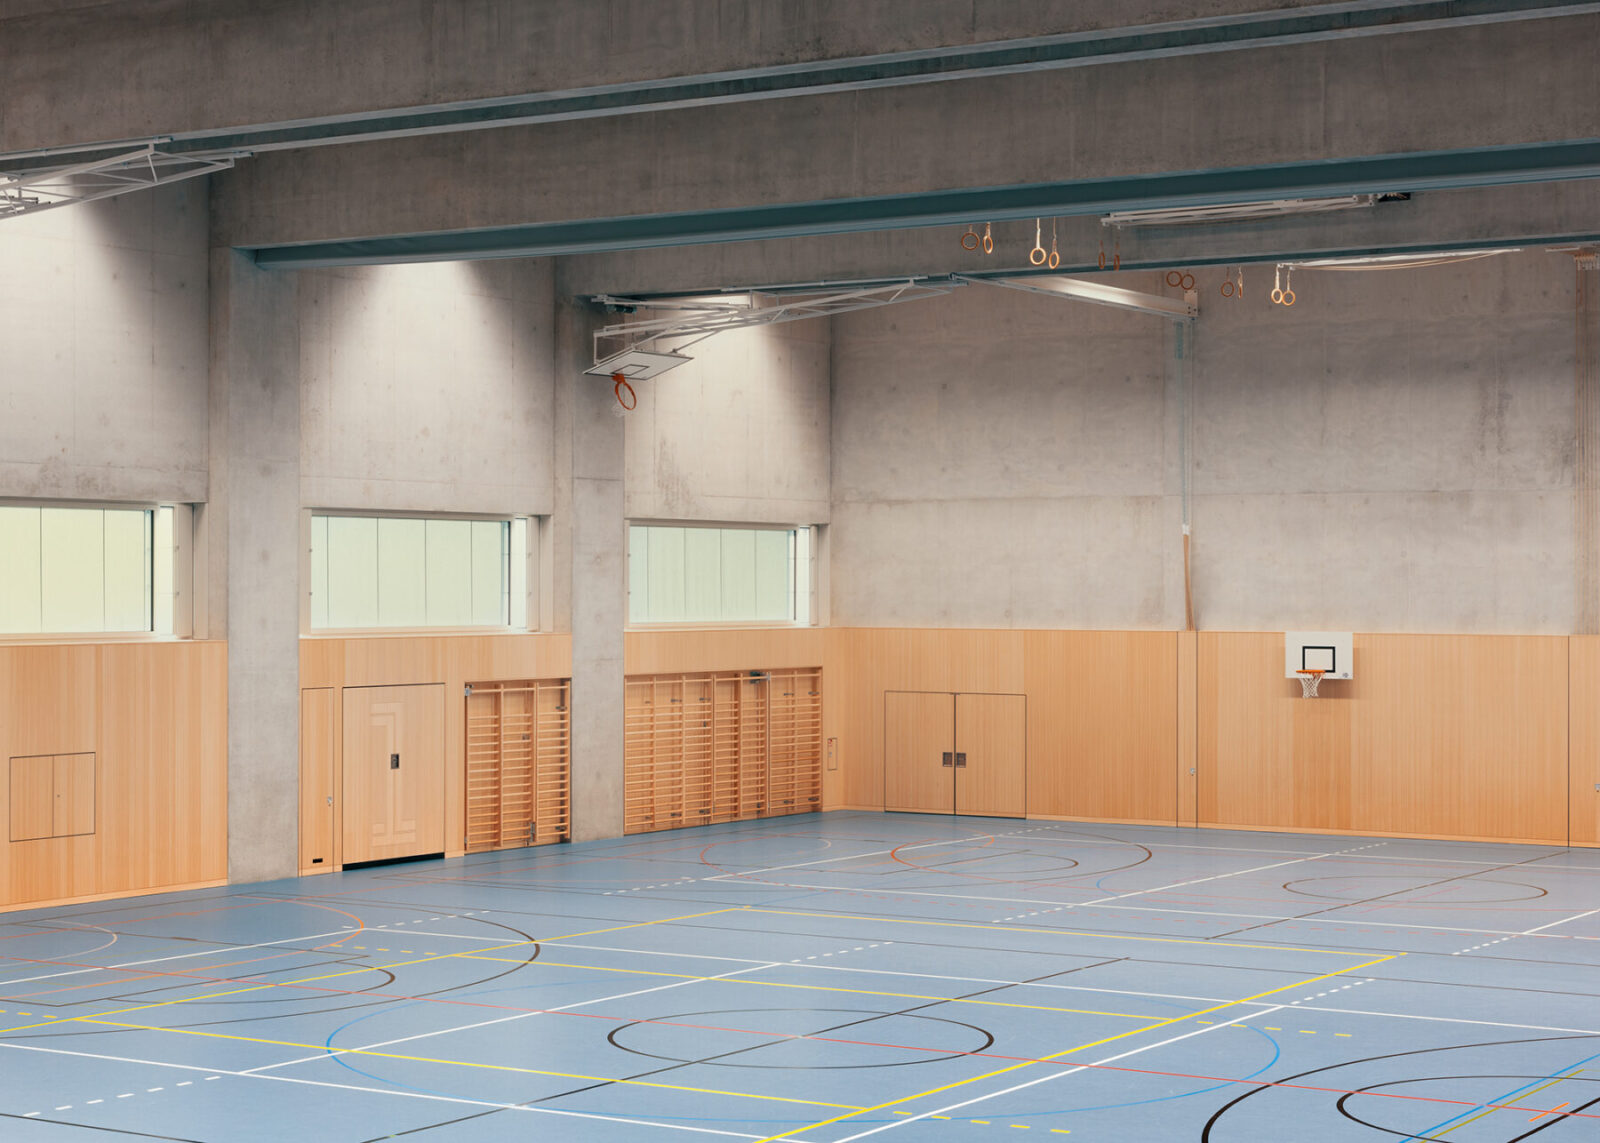 Archisearch Dreifachsporthalle [Tripple Gym] in Eschenbach, Switzerland | by Enzmann Fischer